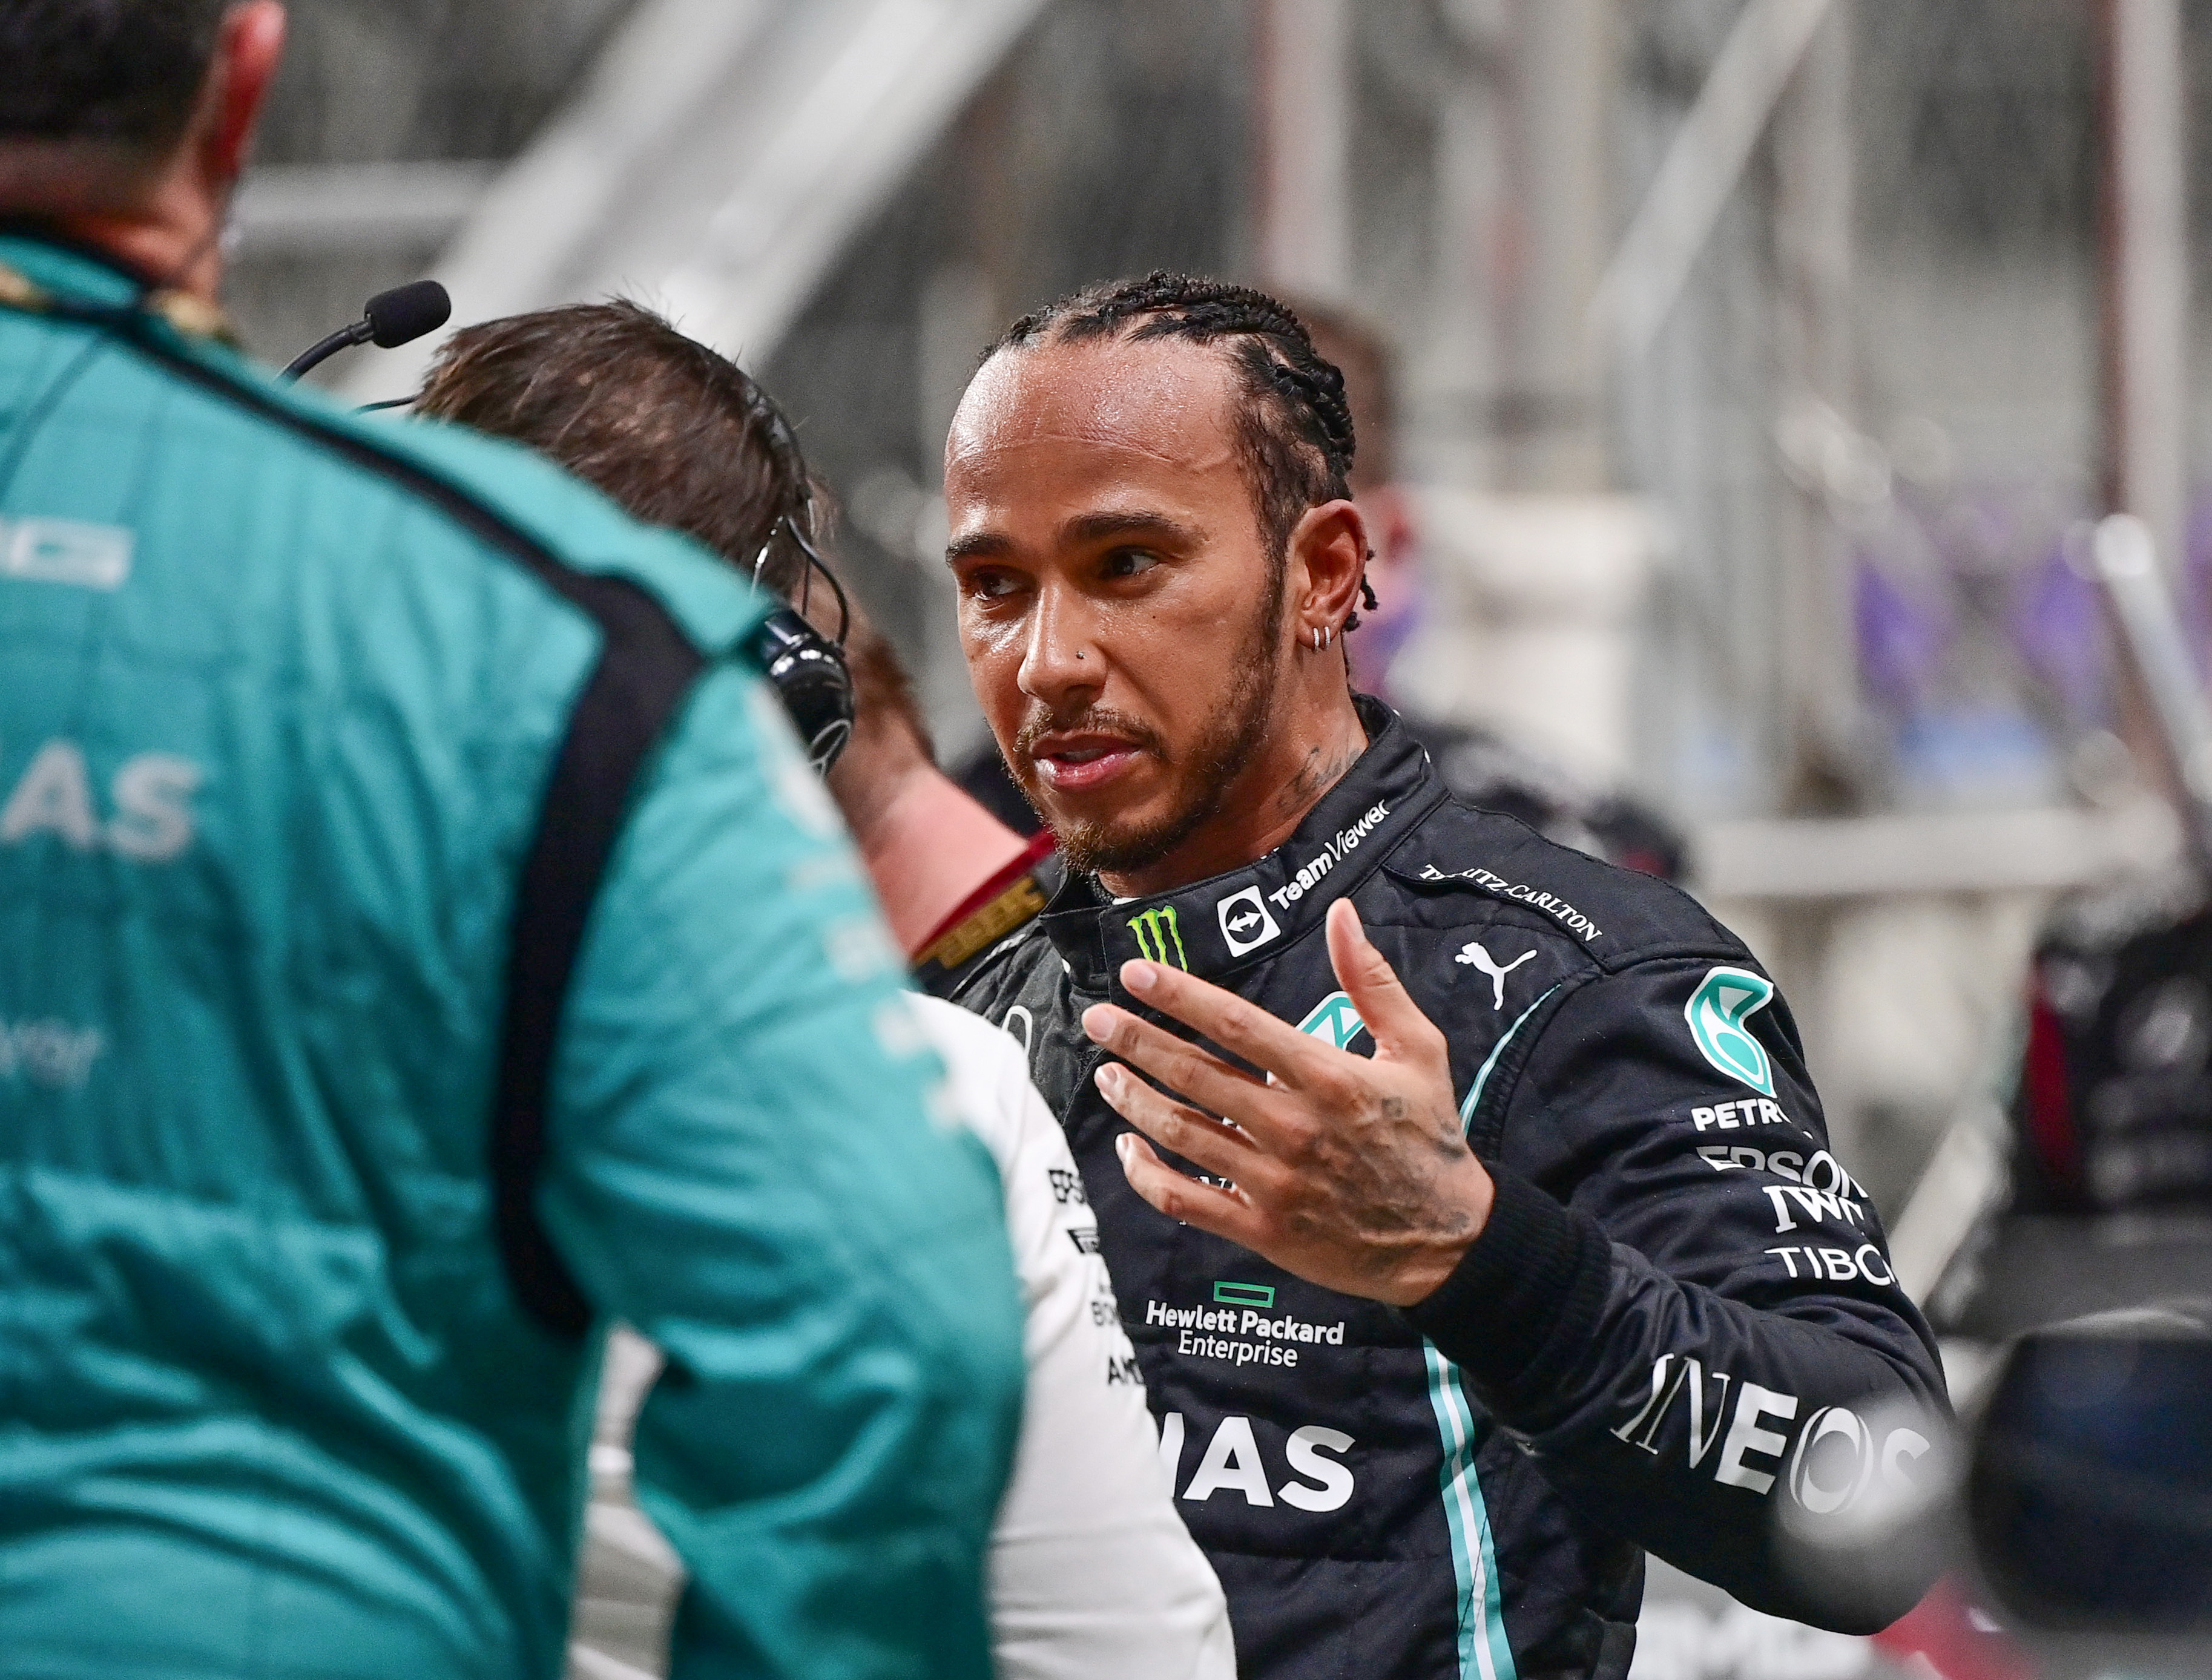 Lewis Hamilton hét vb-címet gyűjtött eddig. Az idén aligha szerzi meg a rekordot jelentő nyolcadikat / Fotó: Gettyimages